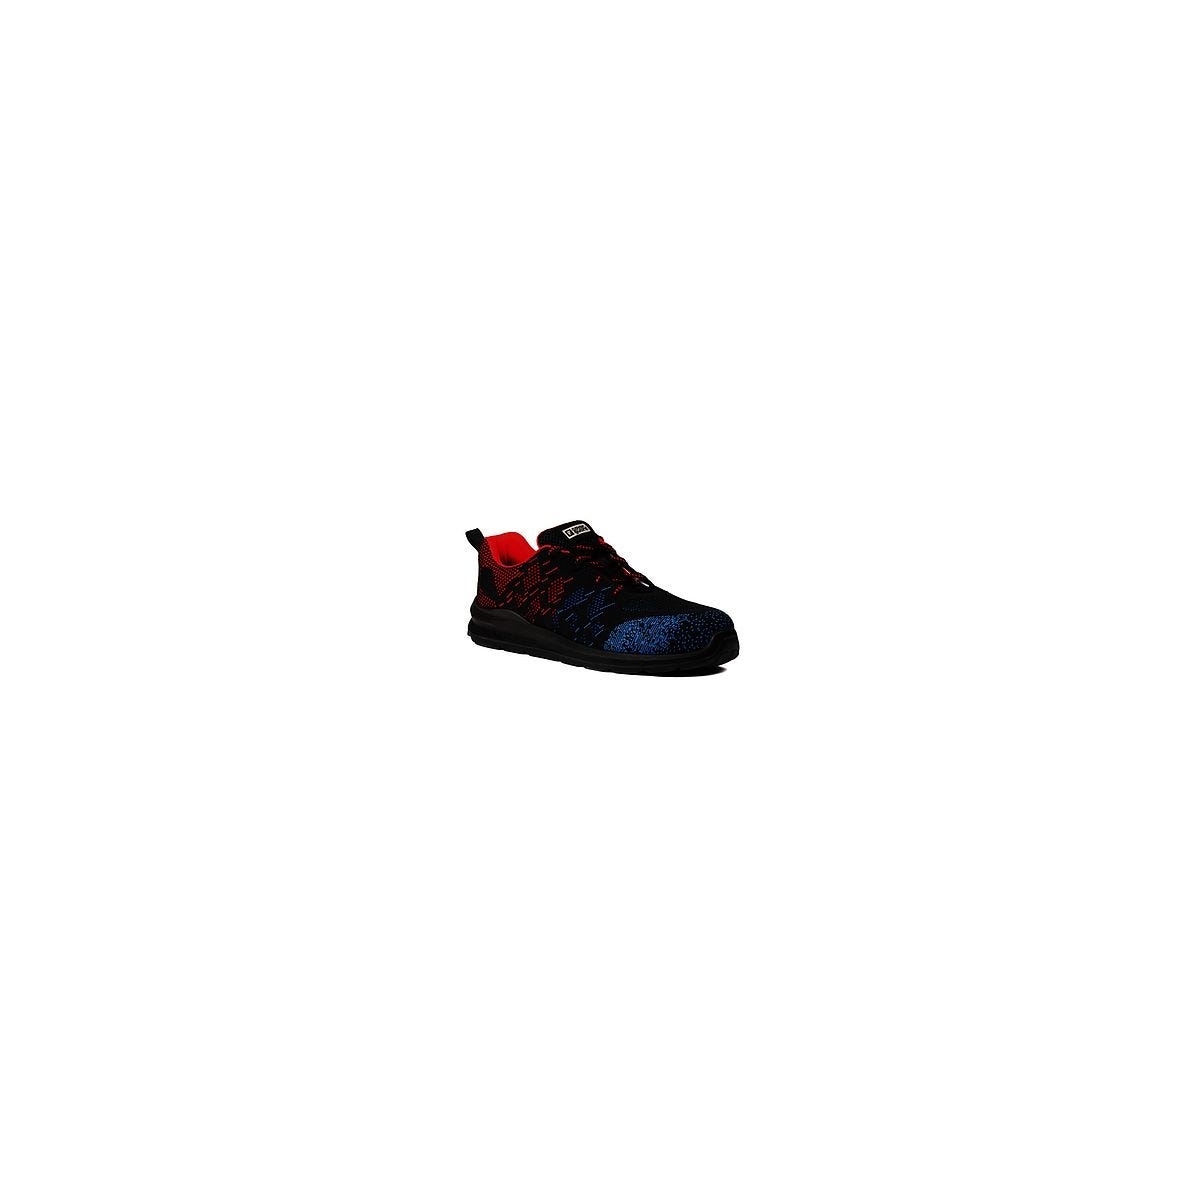 Chaussures de sécurité OTAVITE S1P Basse Noir/Rouge/Bleu - COVERGUARD - Taille 42 0